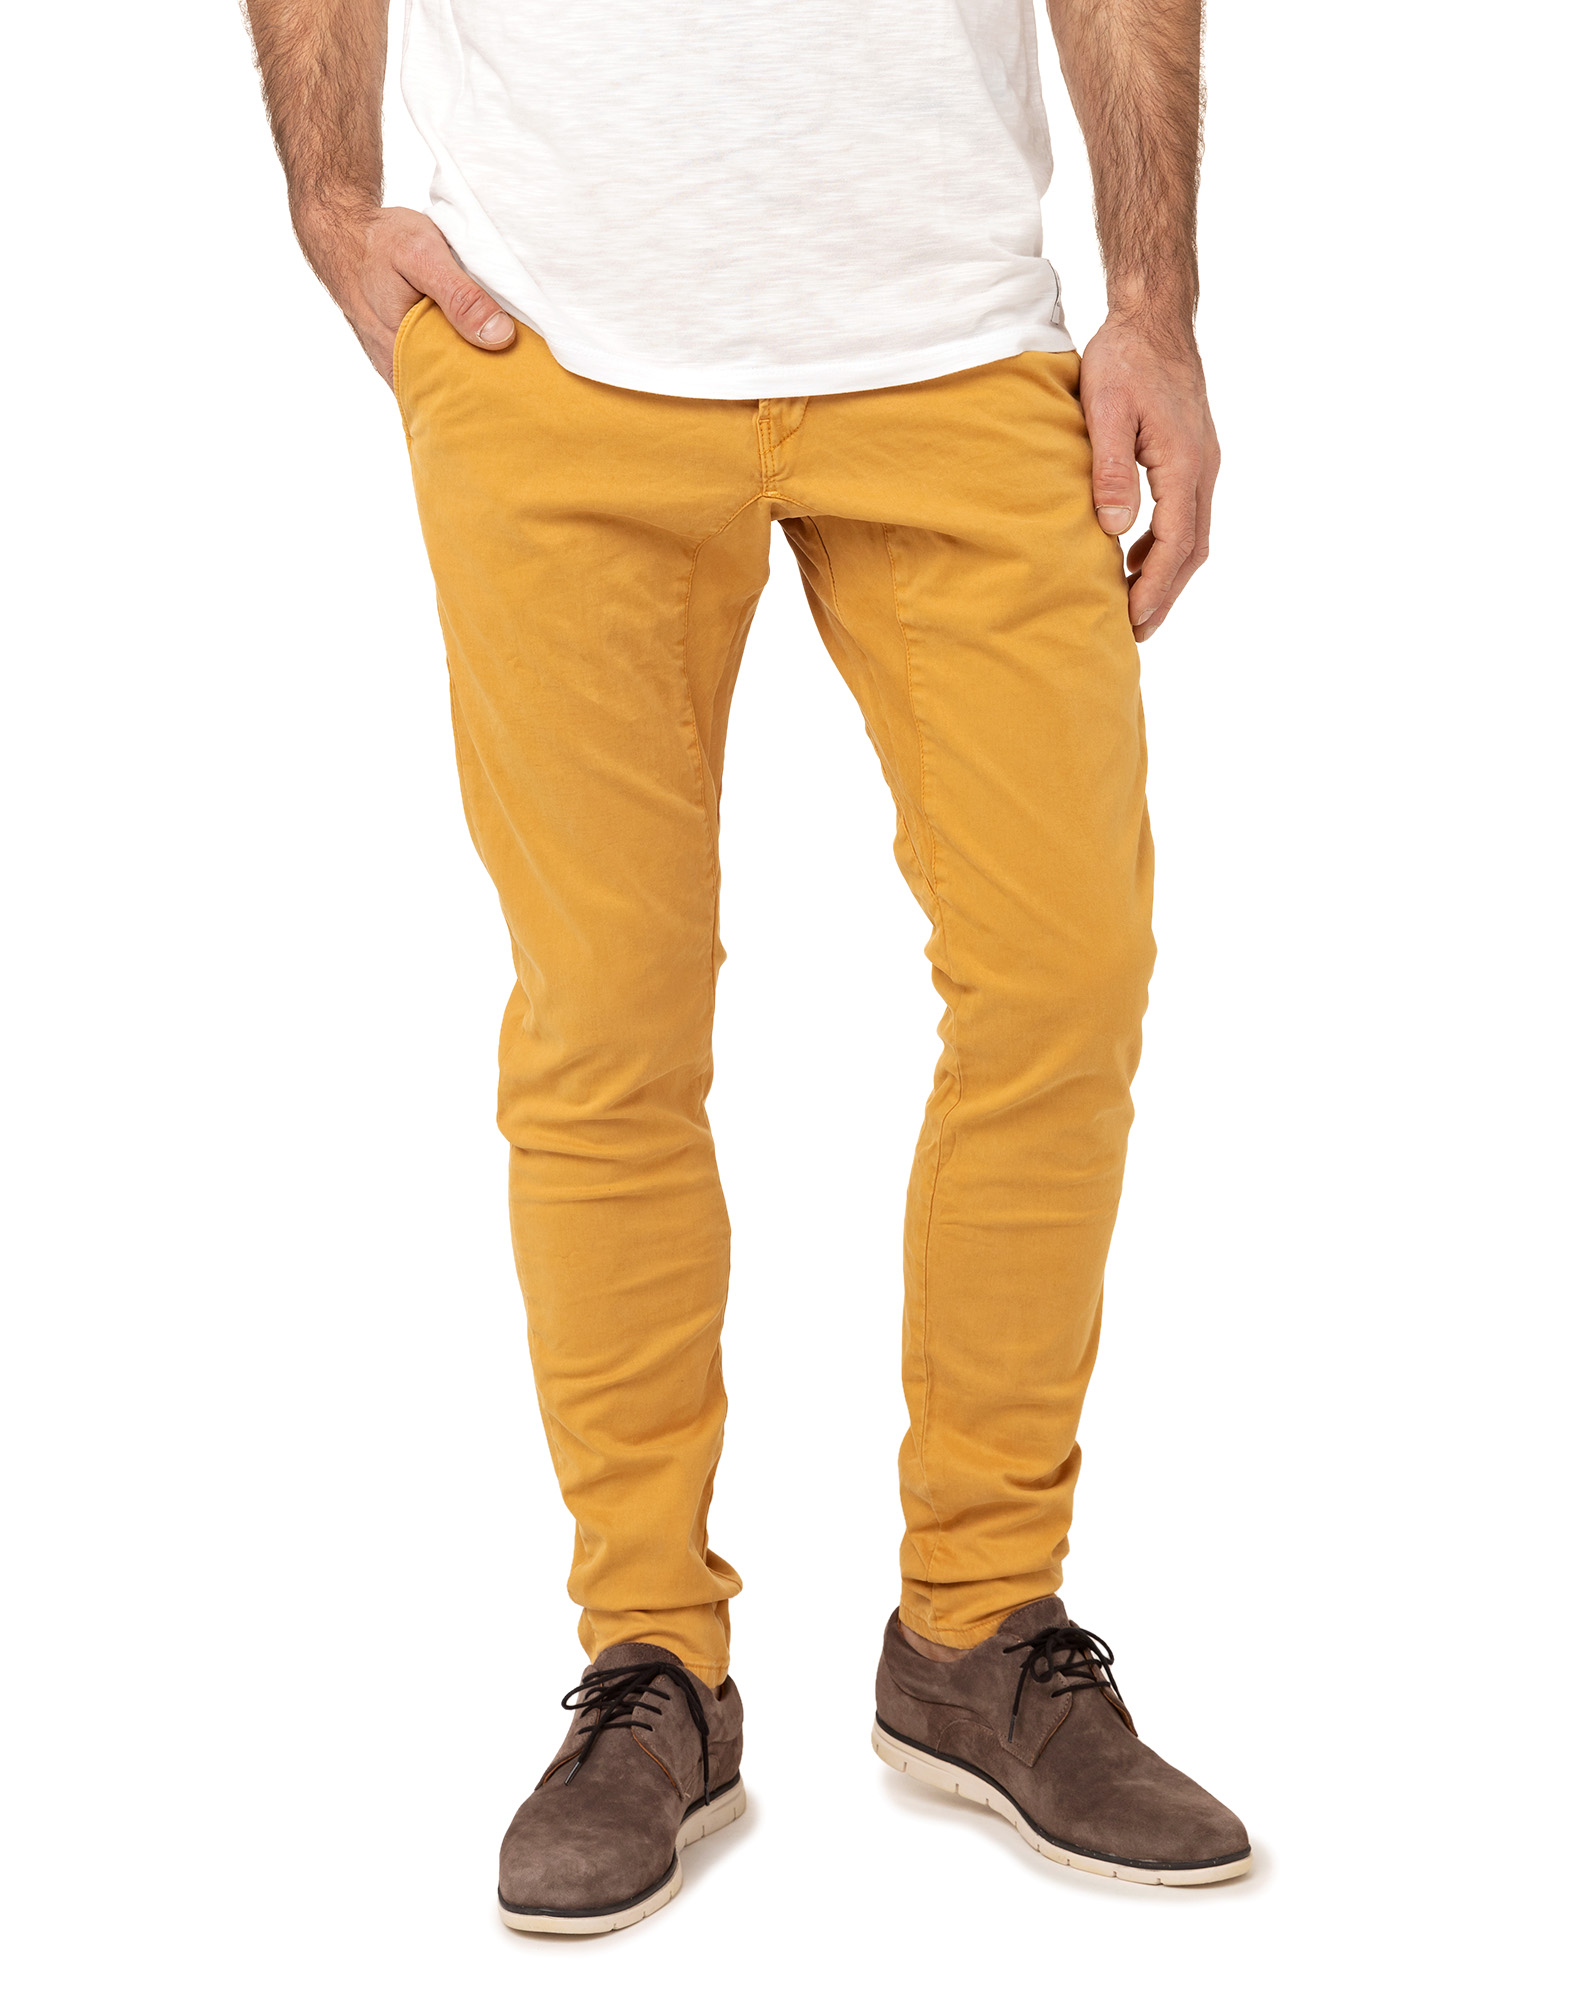 pantalon jaune homme avec quoi